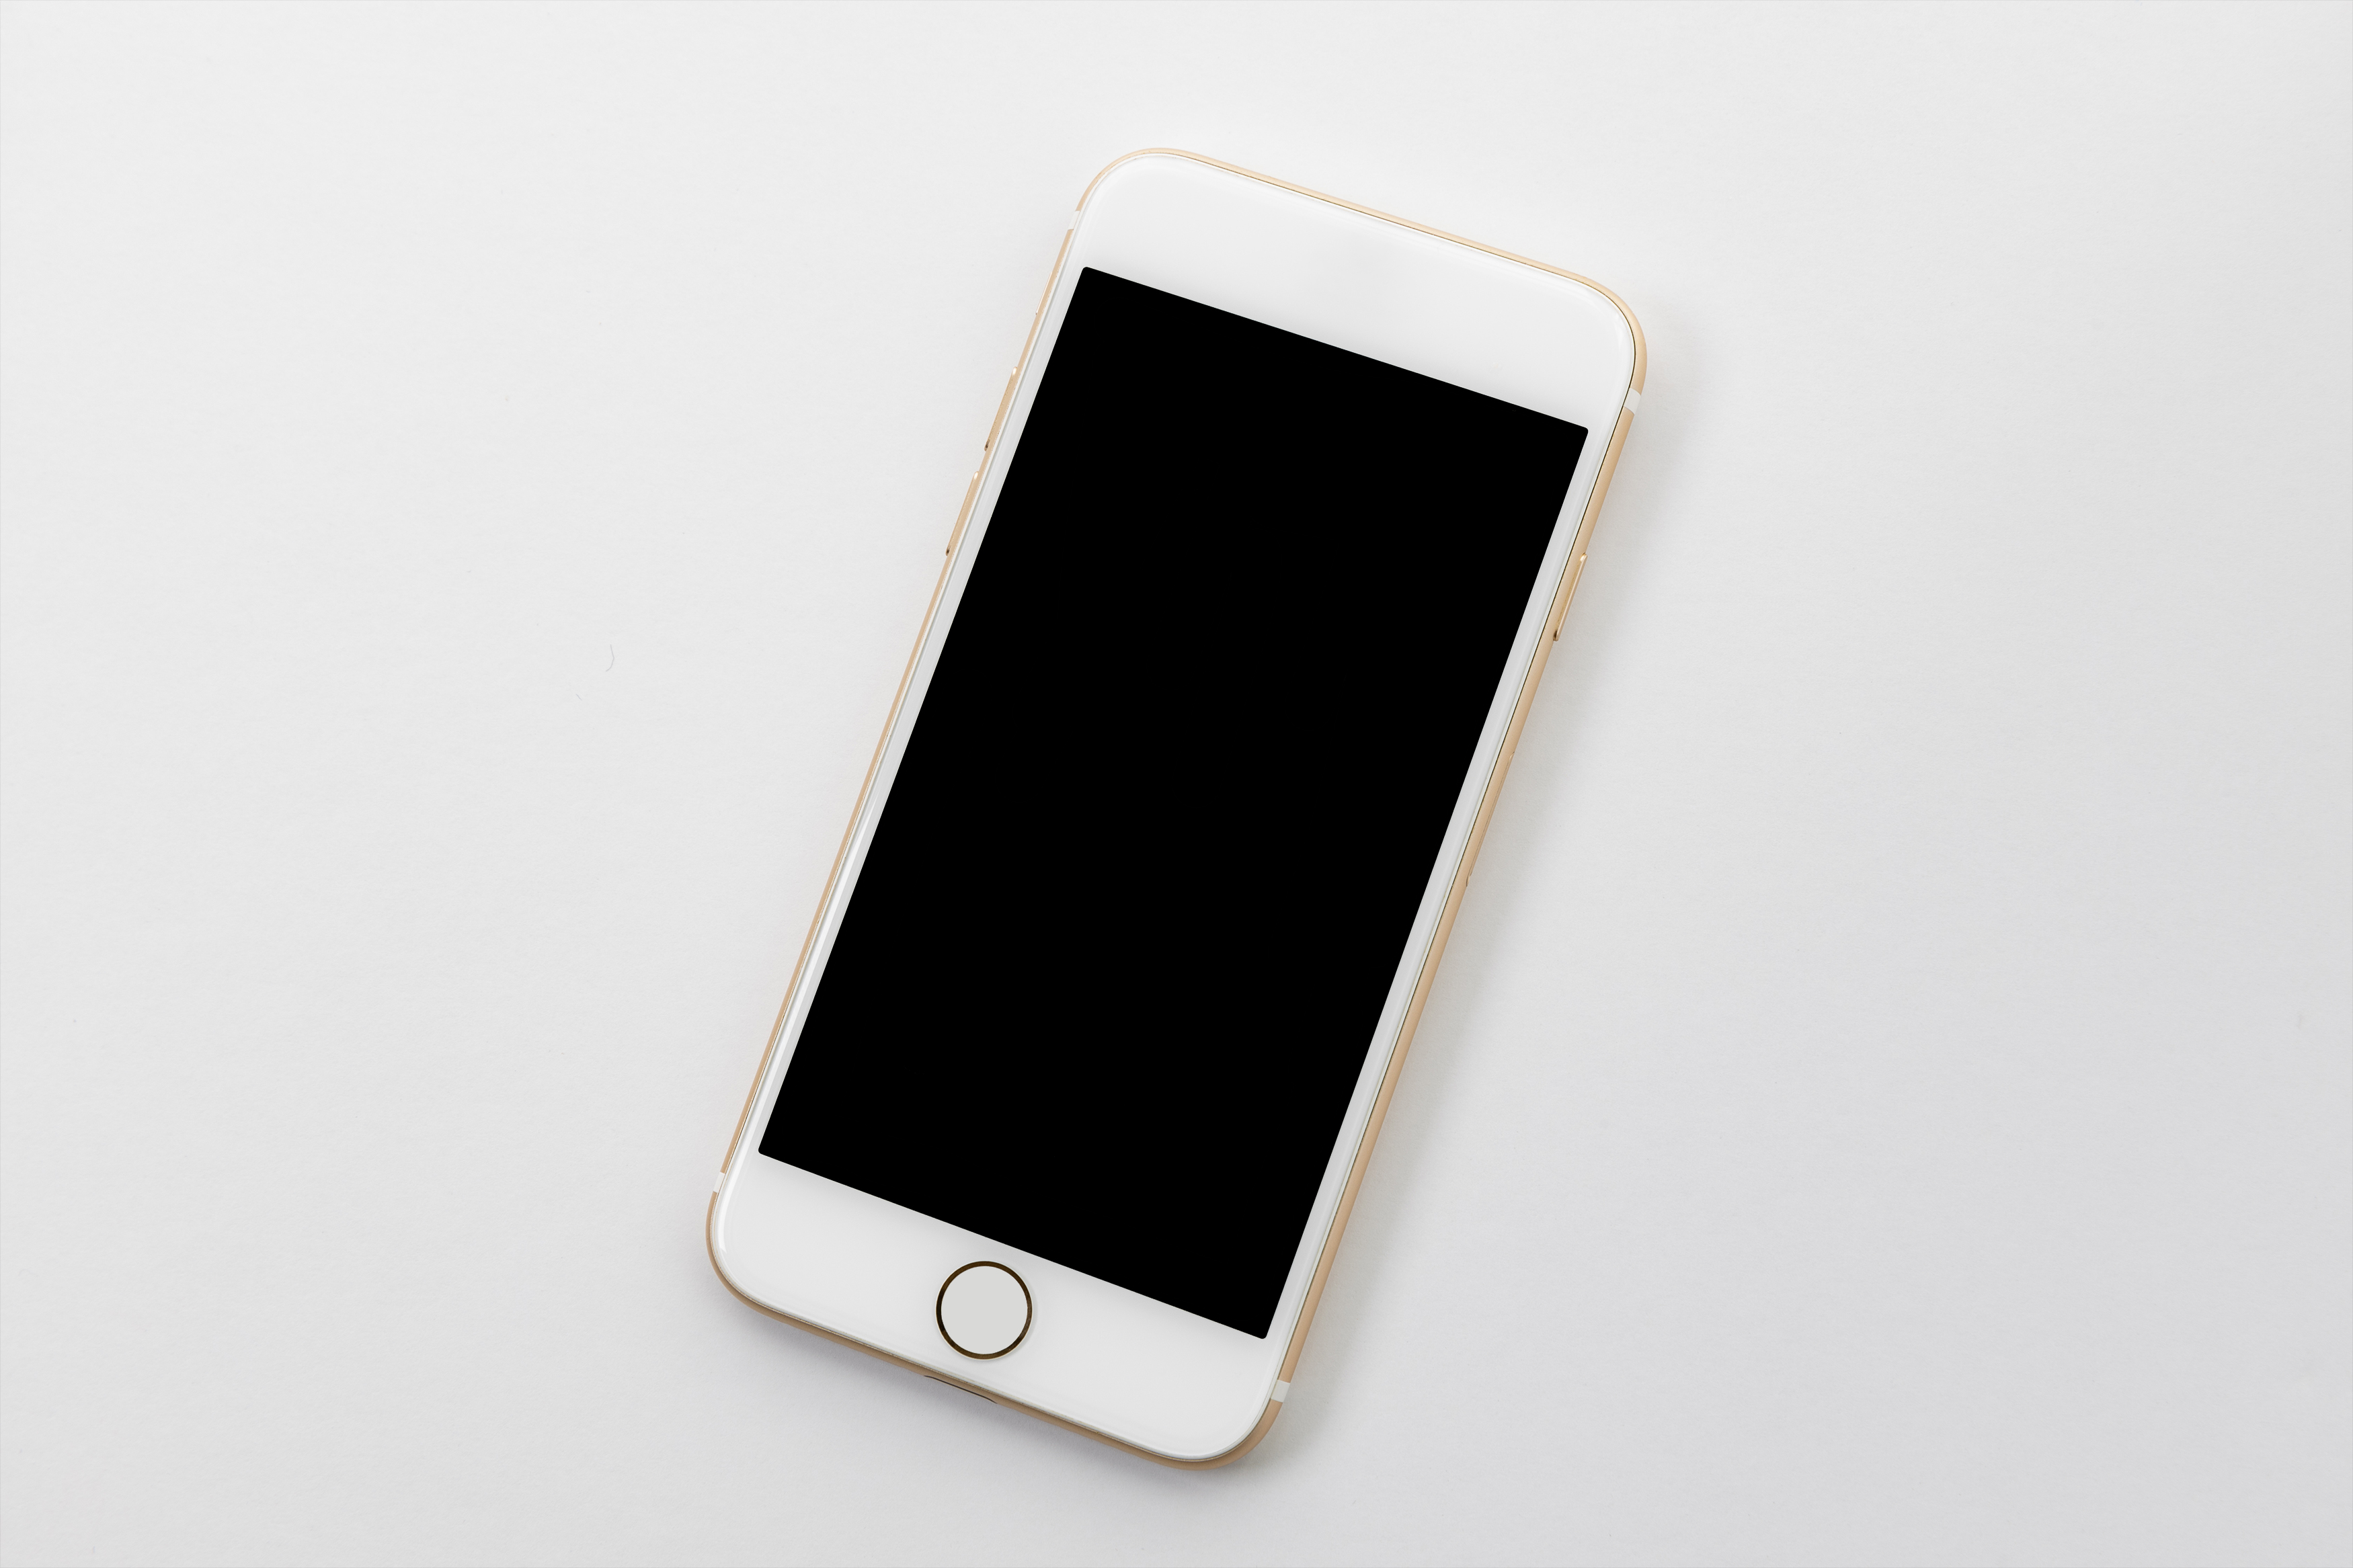 スマートフォン スマホ 2 無料の高画質フリー写真素材 イメージズラボ